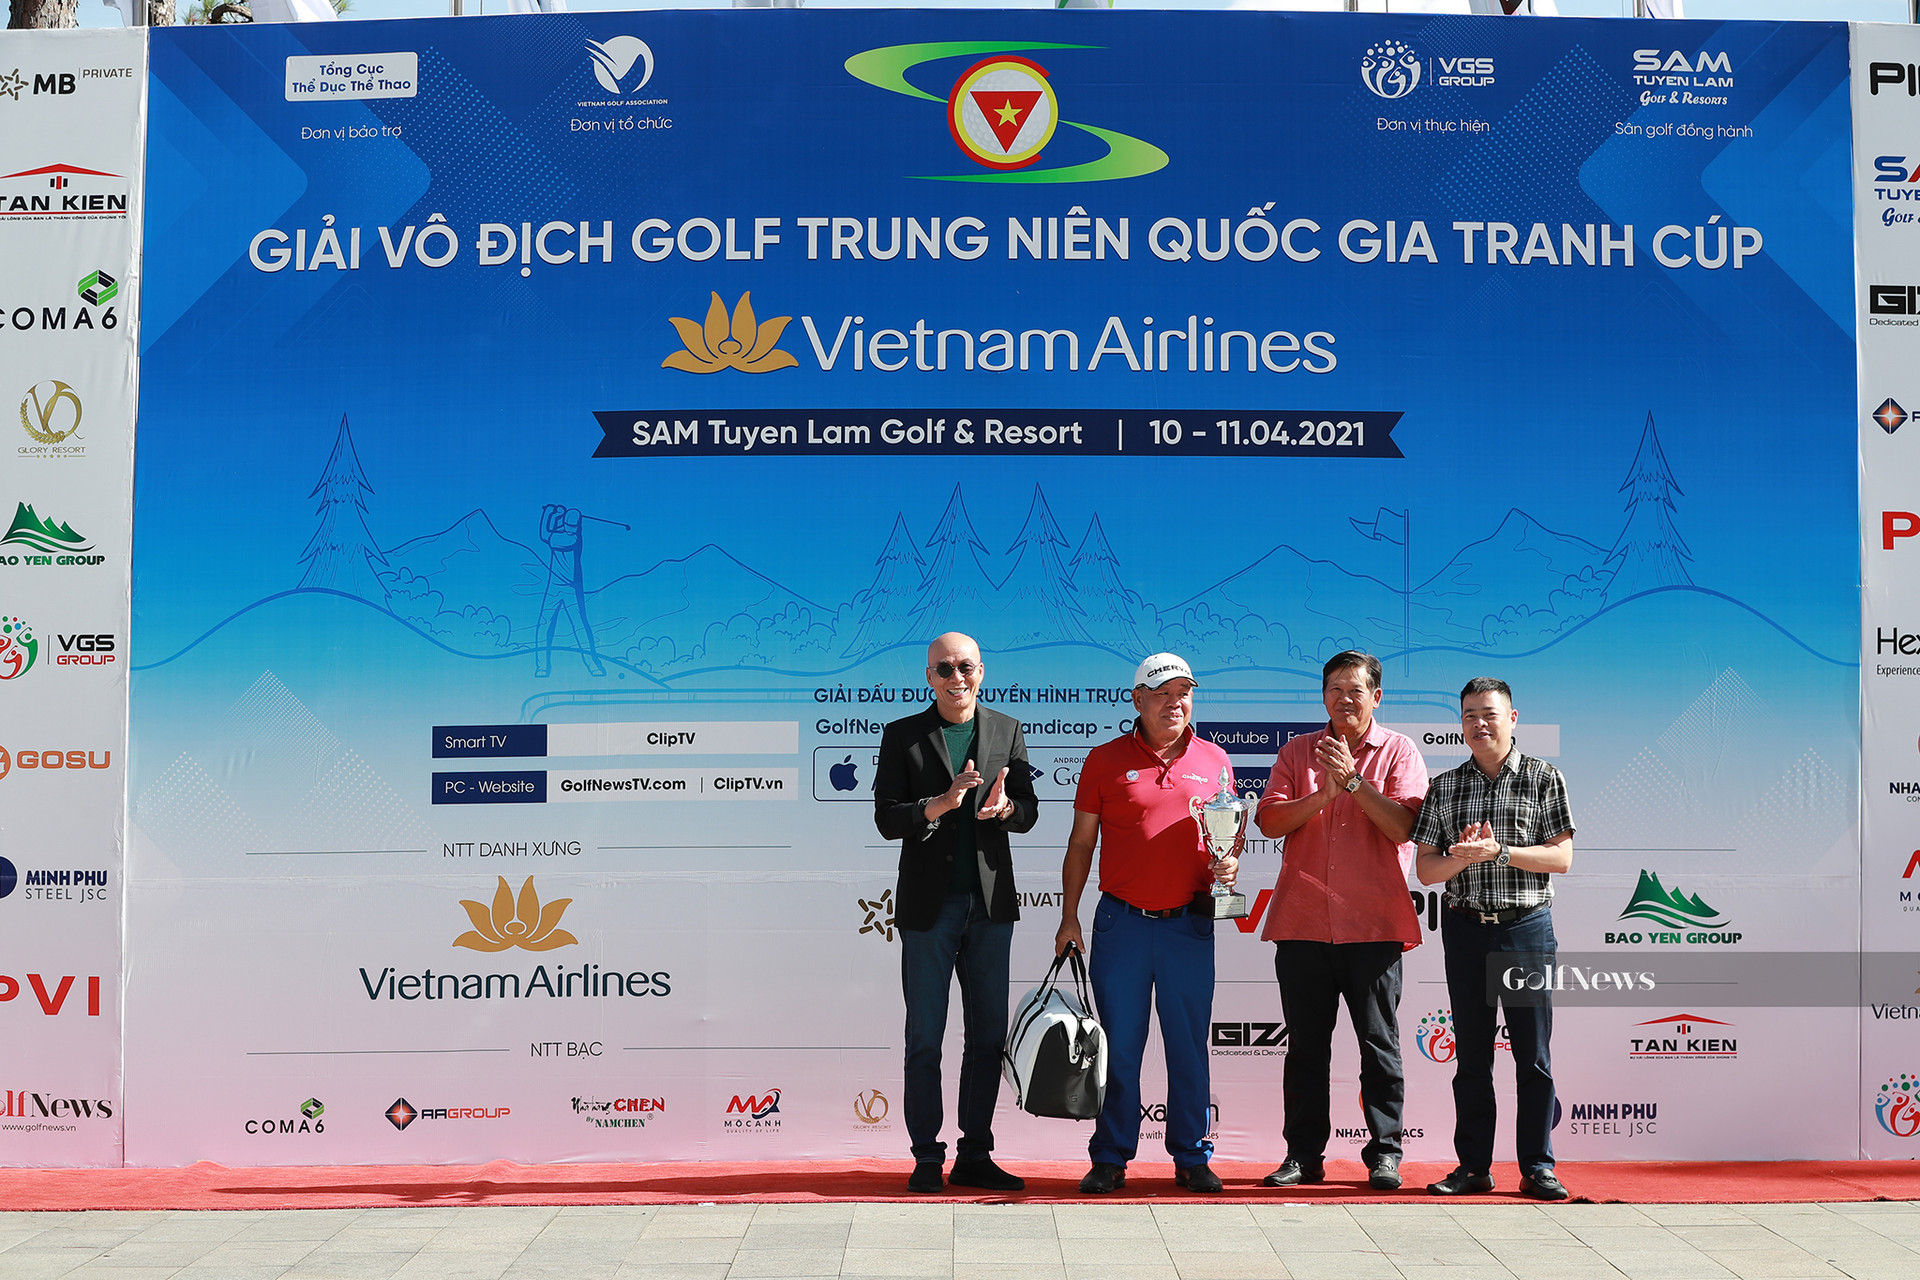 Kết quả chung cuộc giải Vô địch golf Trung niên Quốc gia tranh cúp Vietnam Airlines - Ảnh 3.